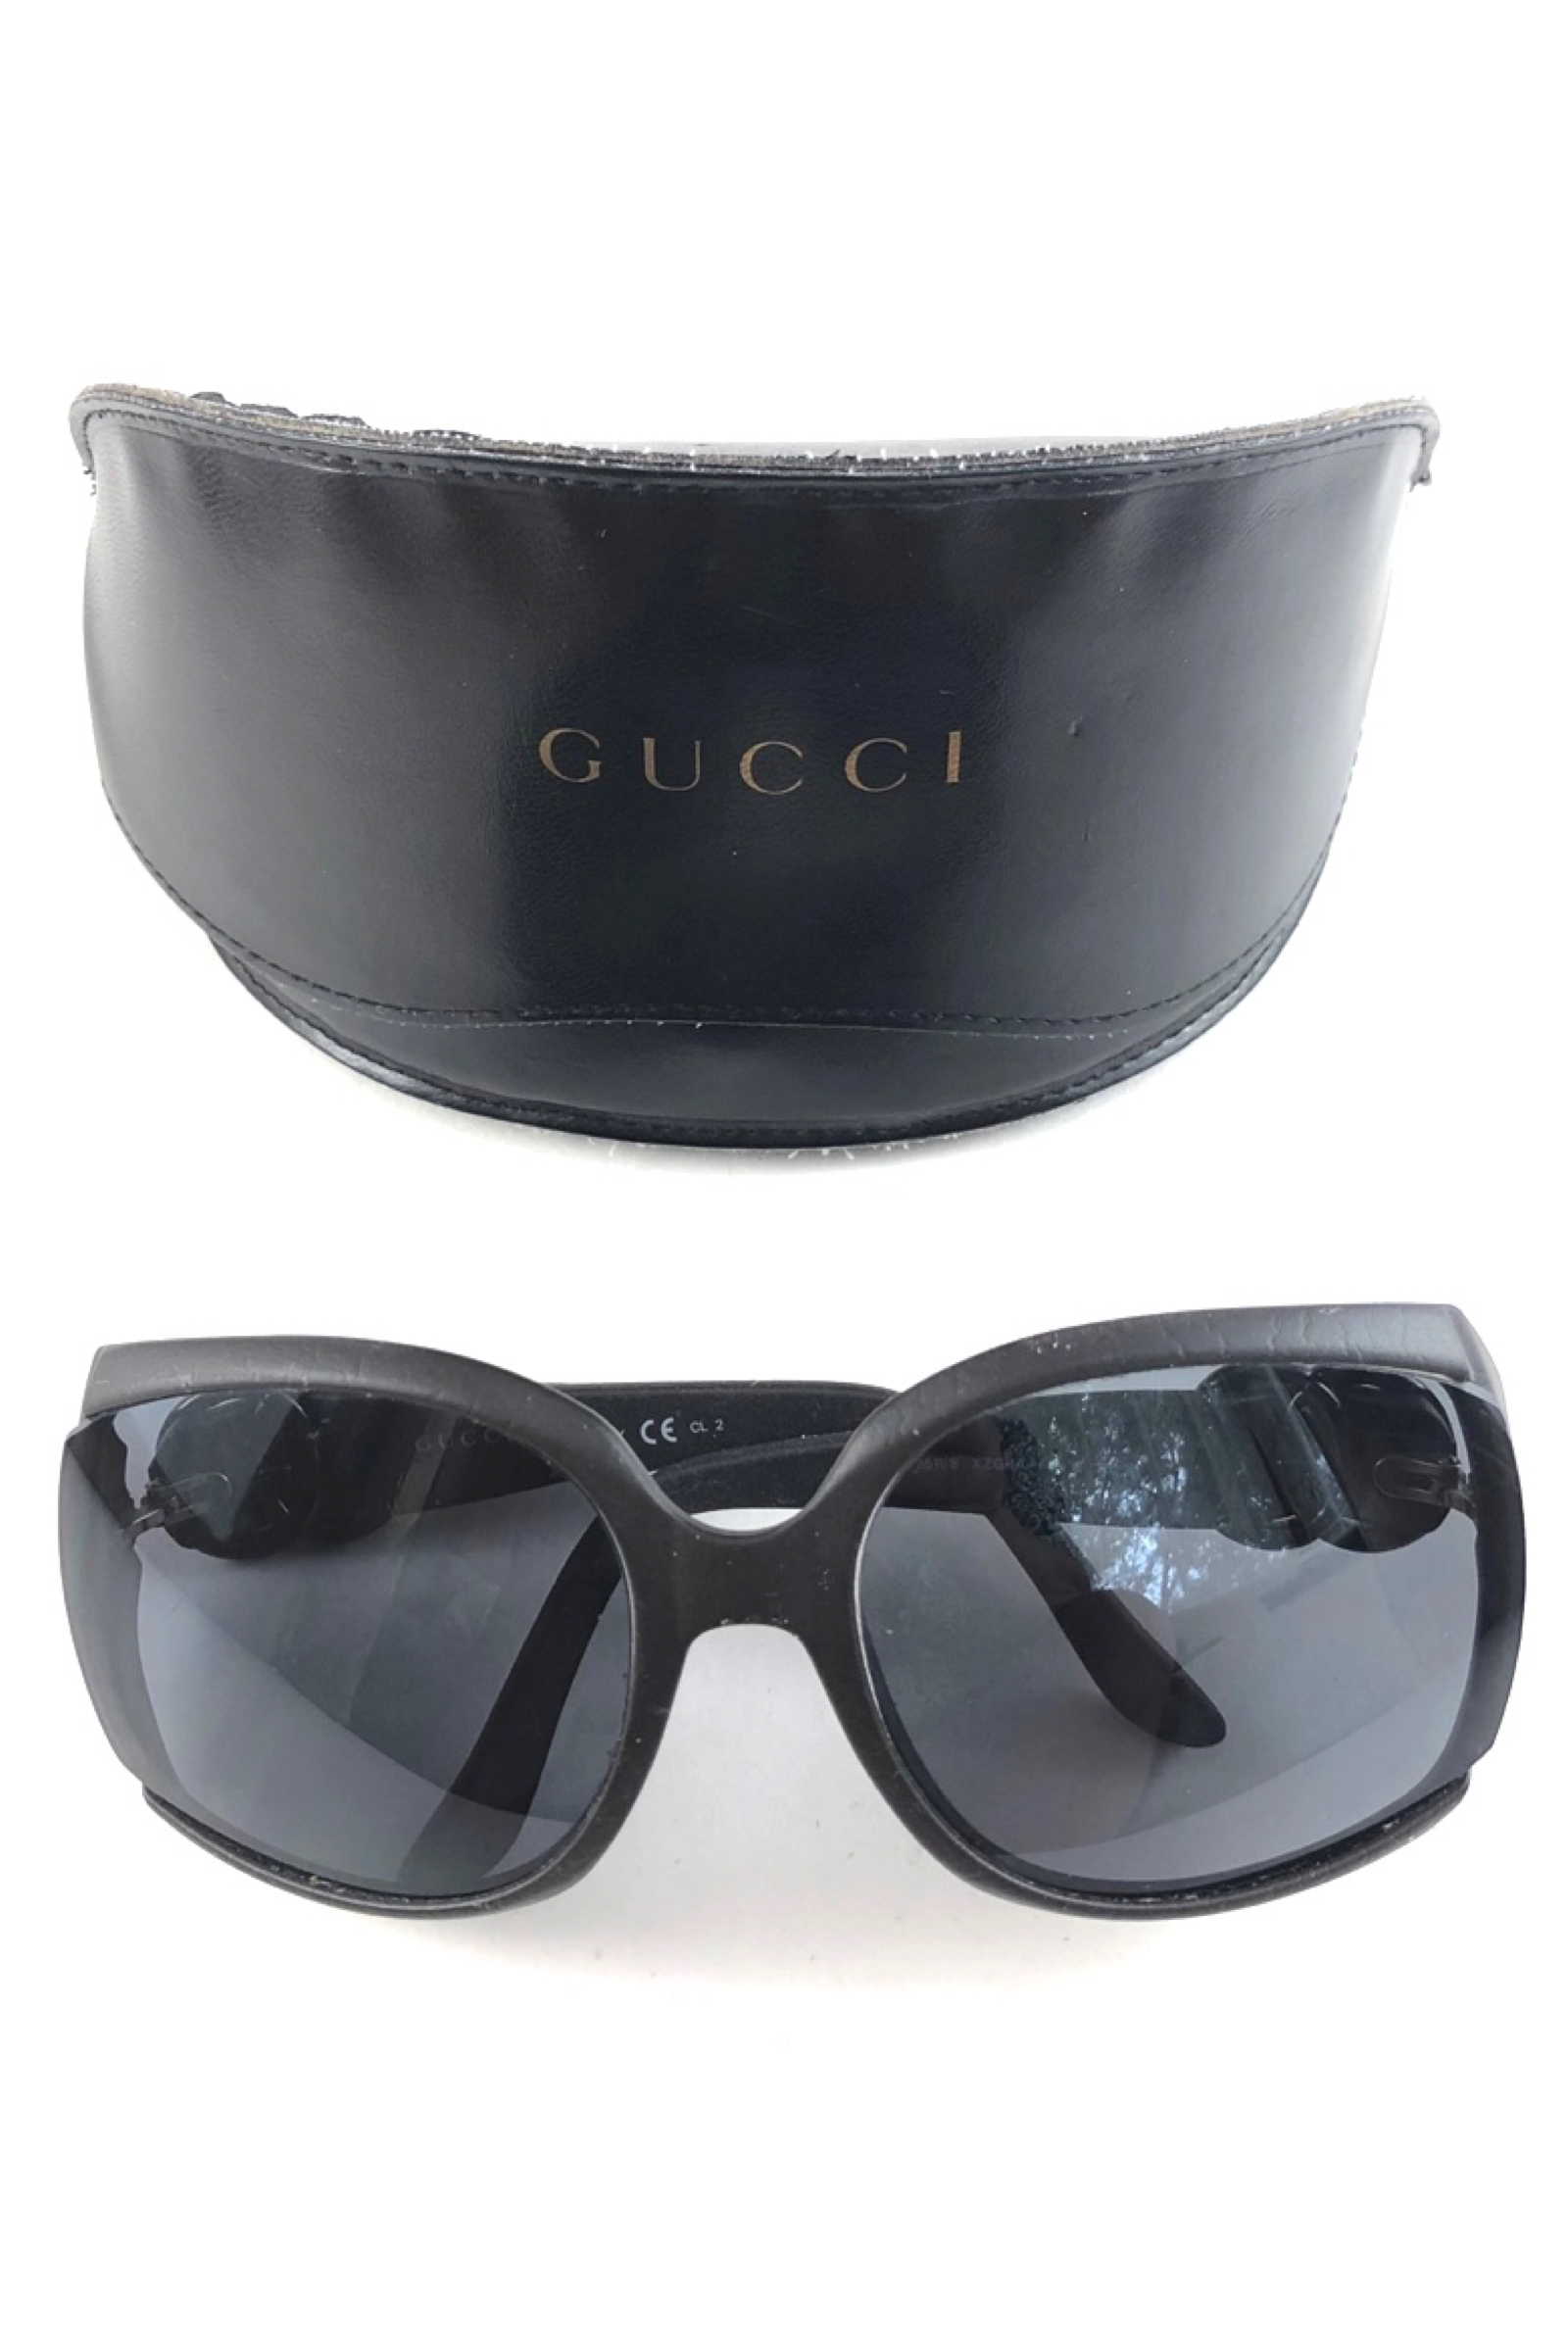 gucci sunglasses with case